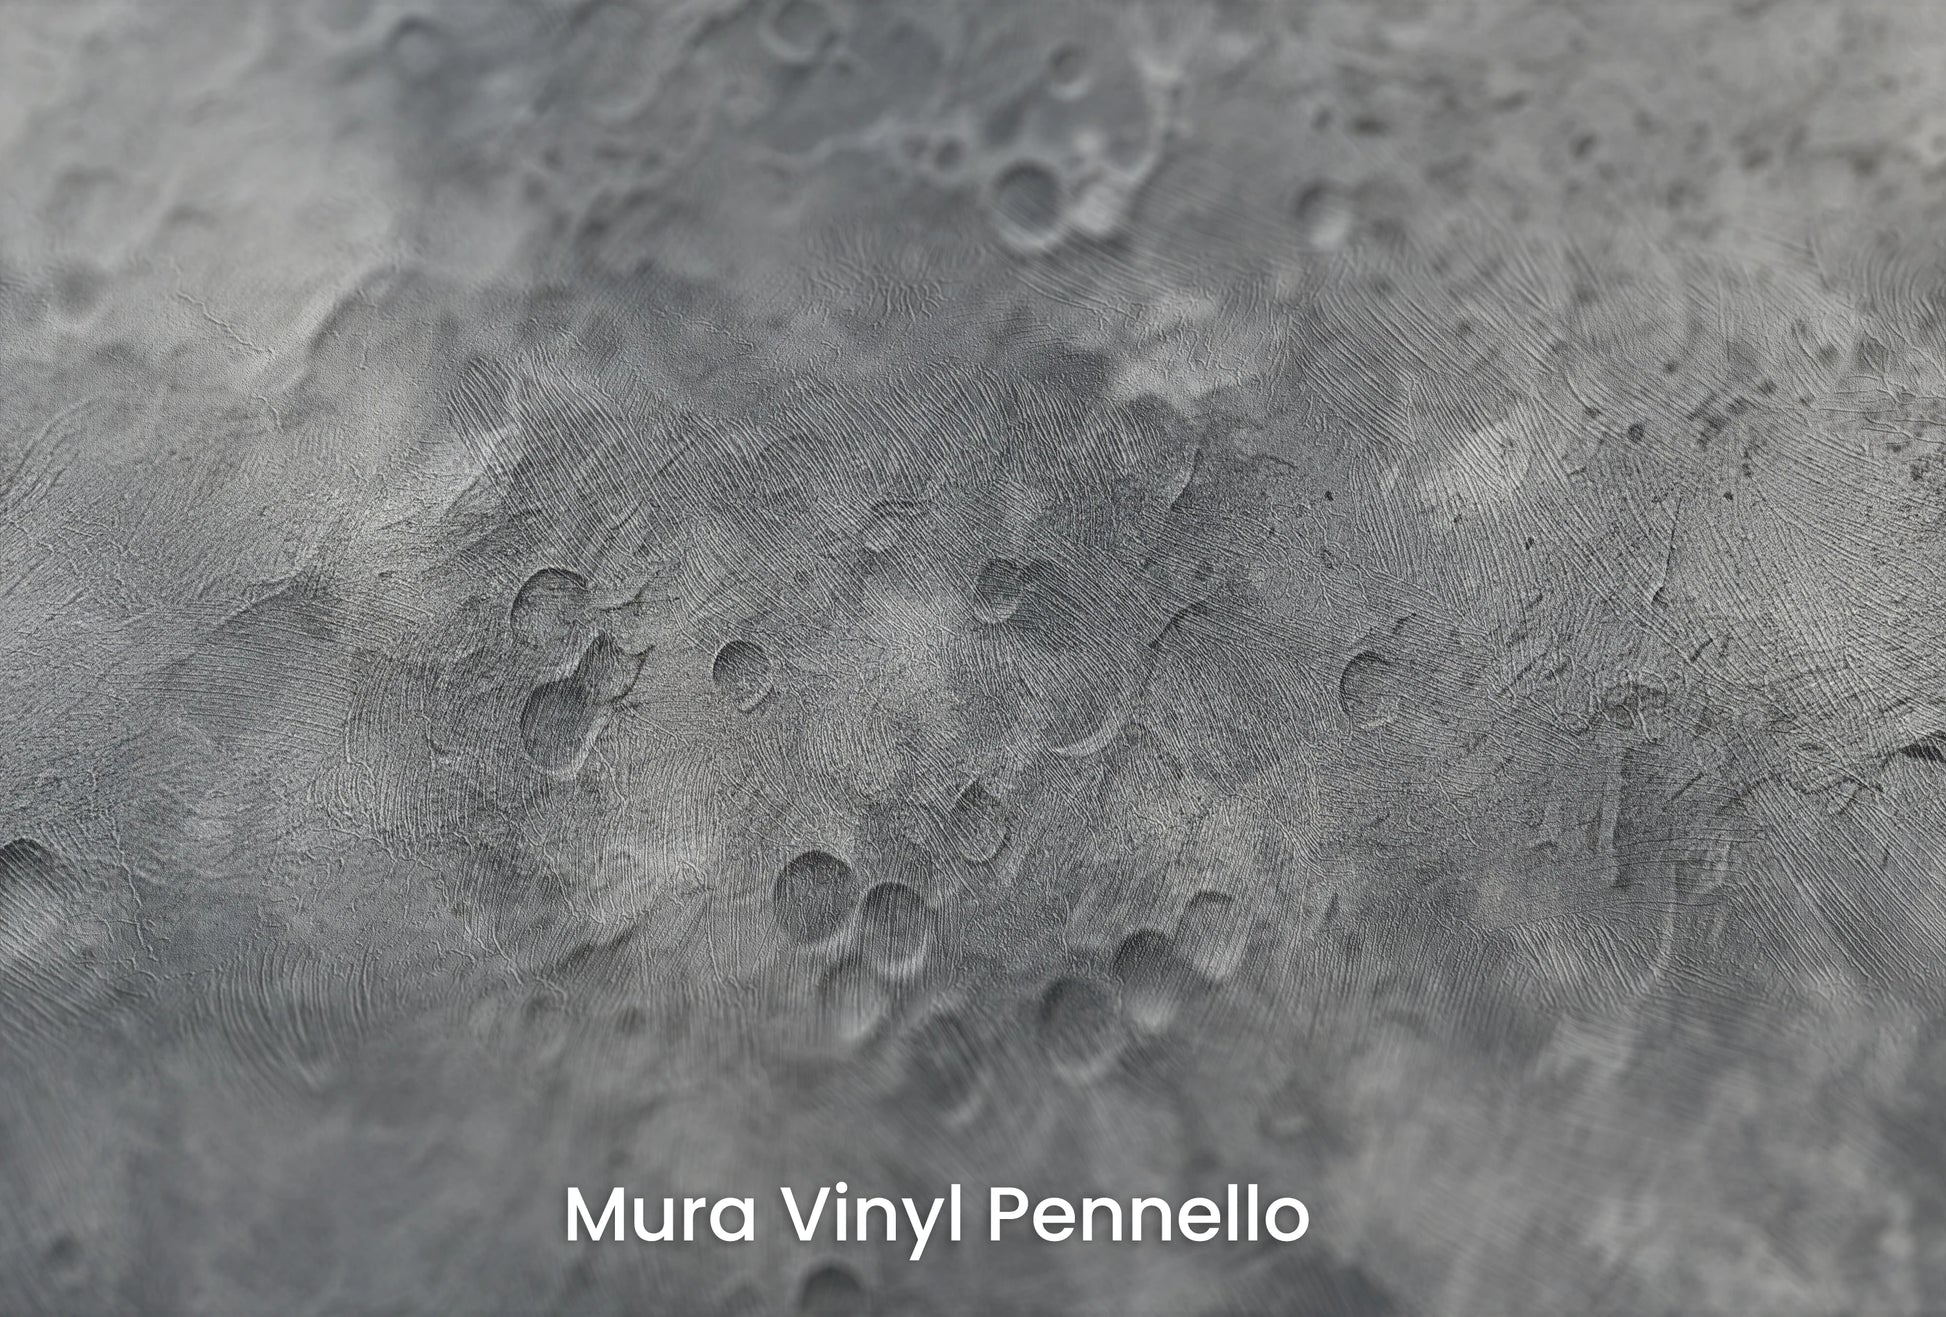 Zbliżenie na artystyczną fototapetę o nazwie Moon's Geography na podłożu Mura Vinyl Pennello - faktura pociągnięć pędzla malarskiego.